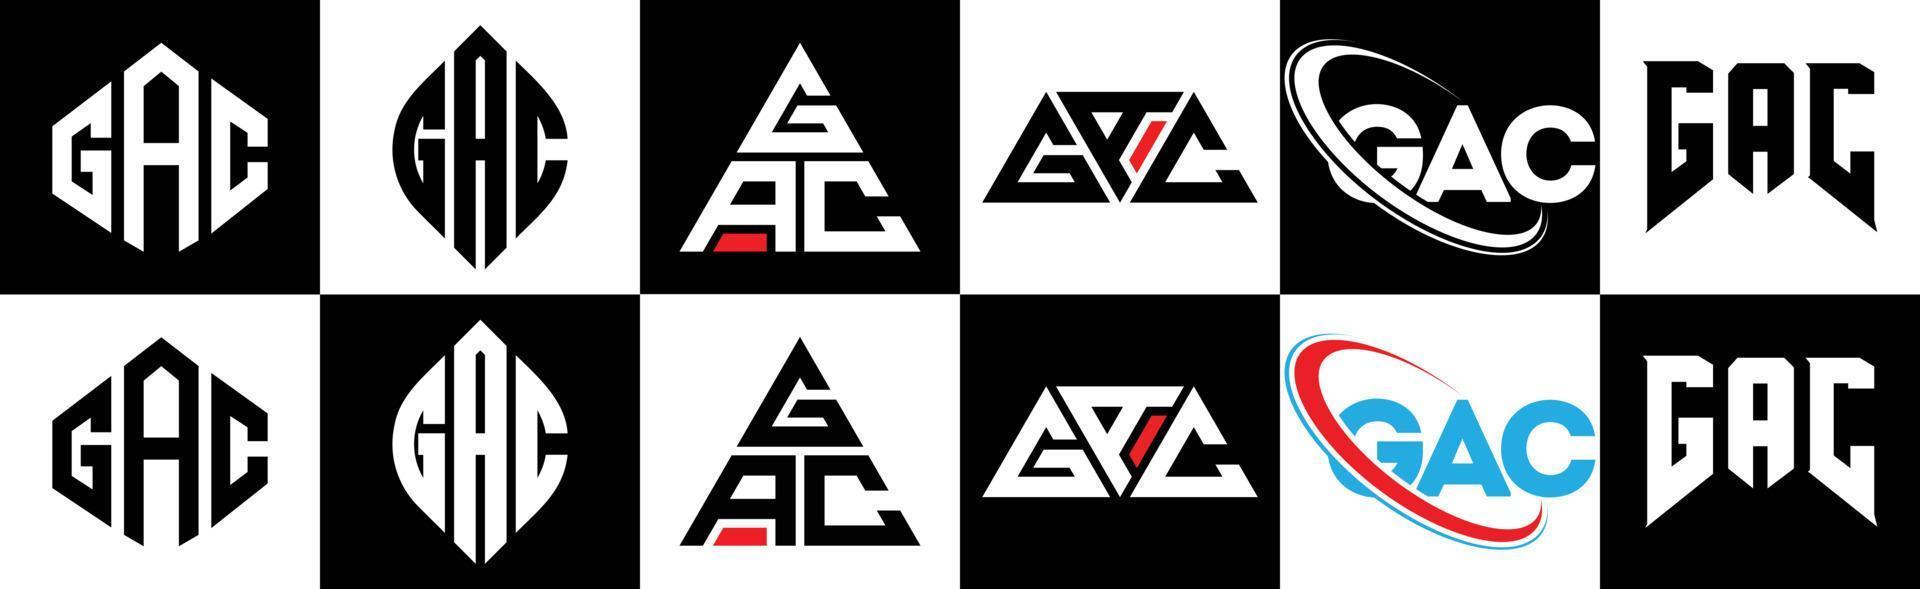 Gac-Buchstaben-Logo-Design in sechs Stilen. gac polygon, kreis, dreieck, sechseck, flacher und einfacher stil mit schwarz-weißem buchstabenlogo in einer zeichenfläche. gac minimalistisches und klassisches Logo vektor